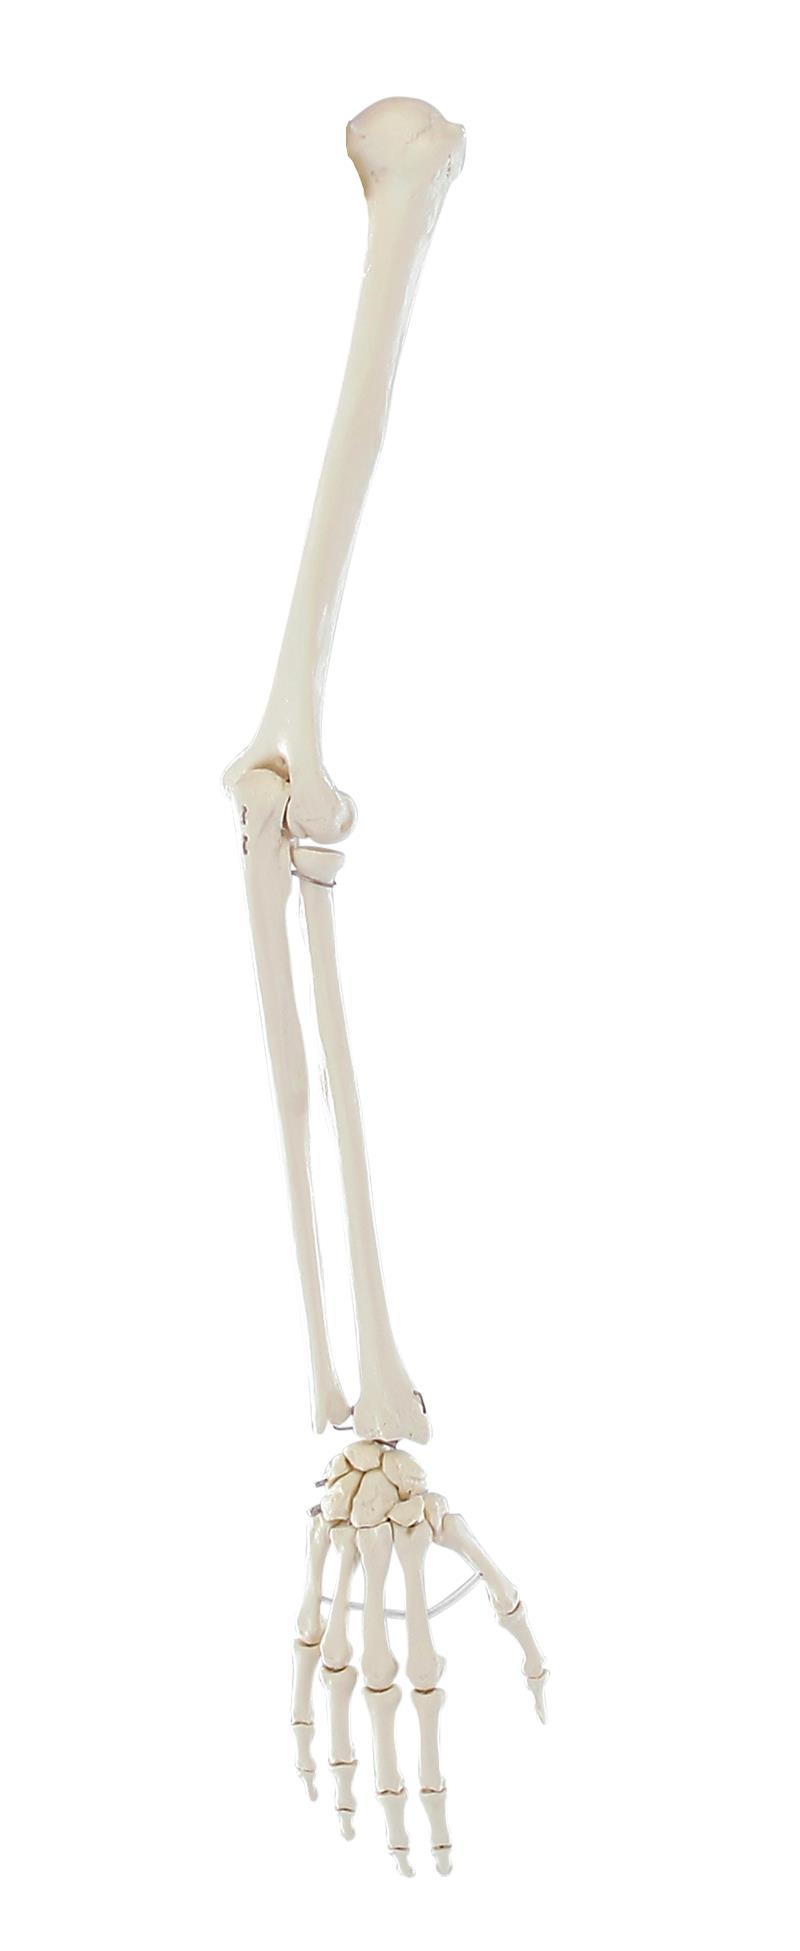 Skeleton of arm